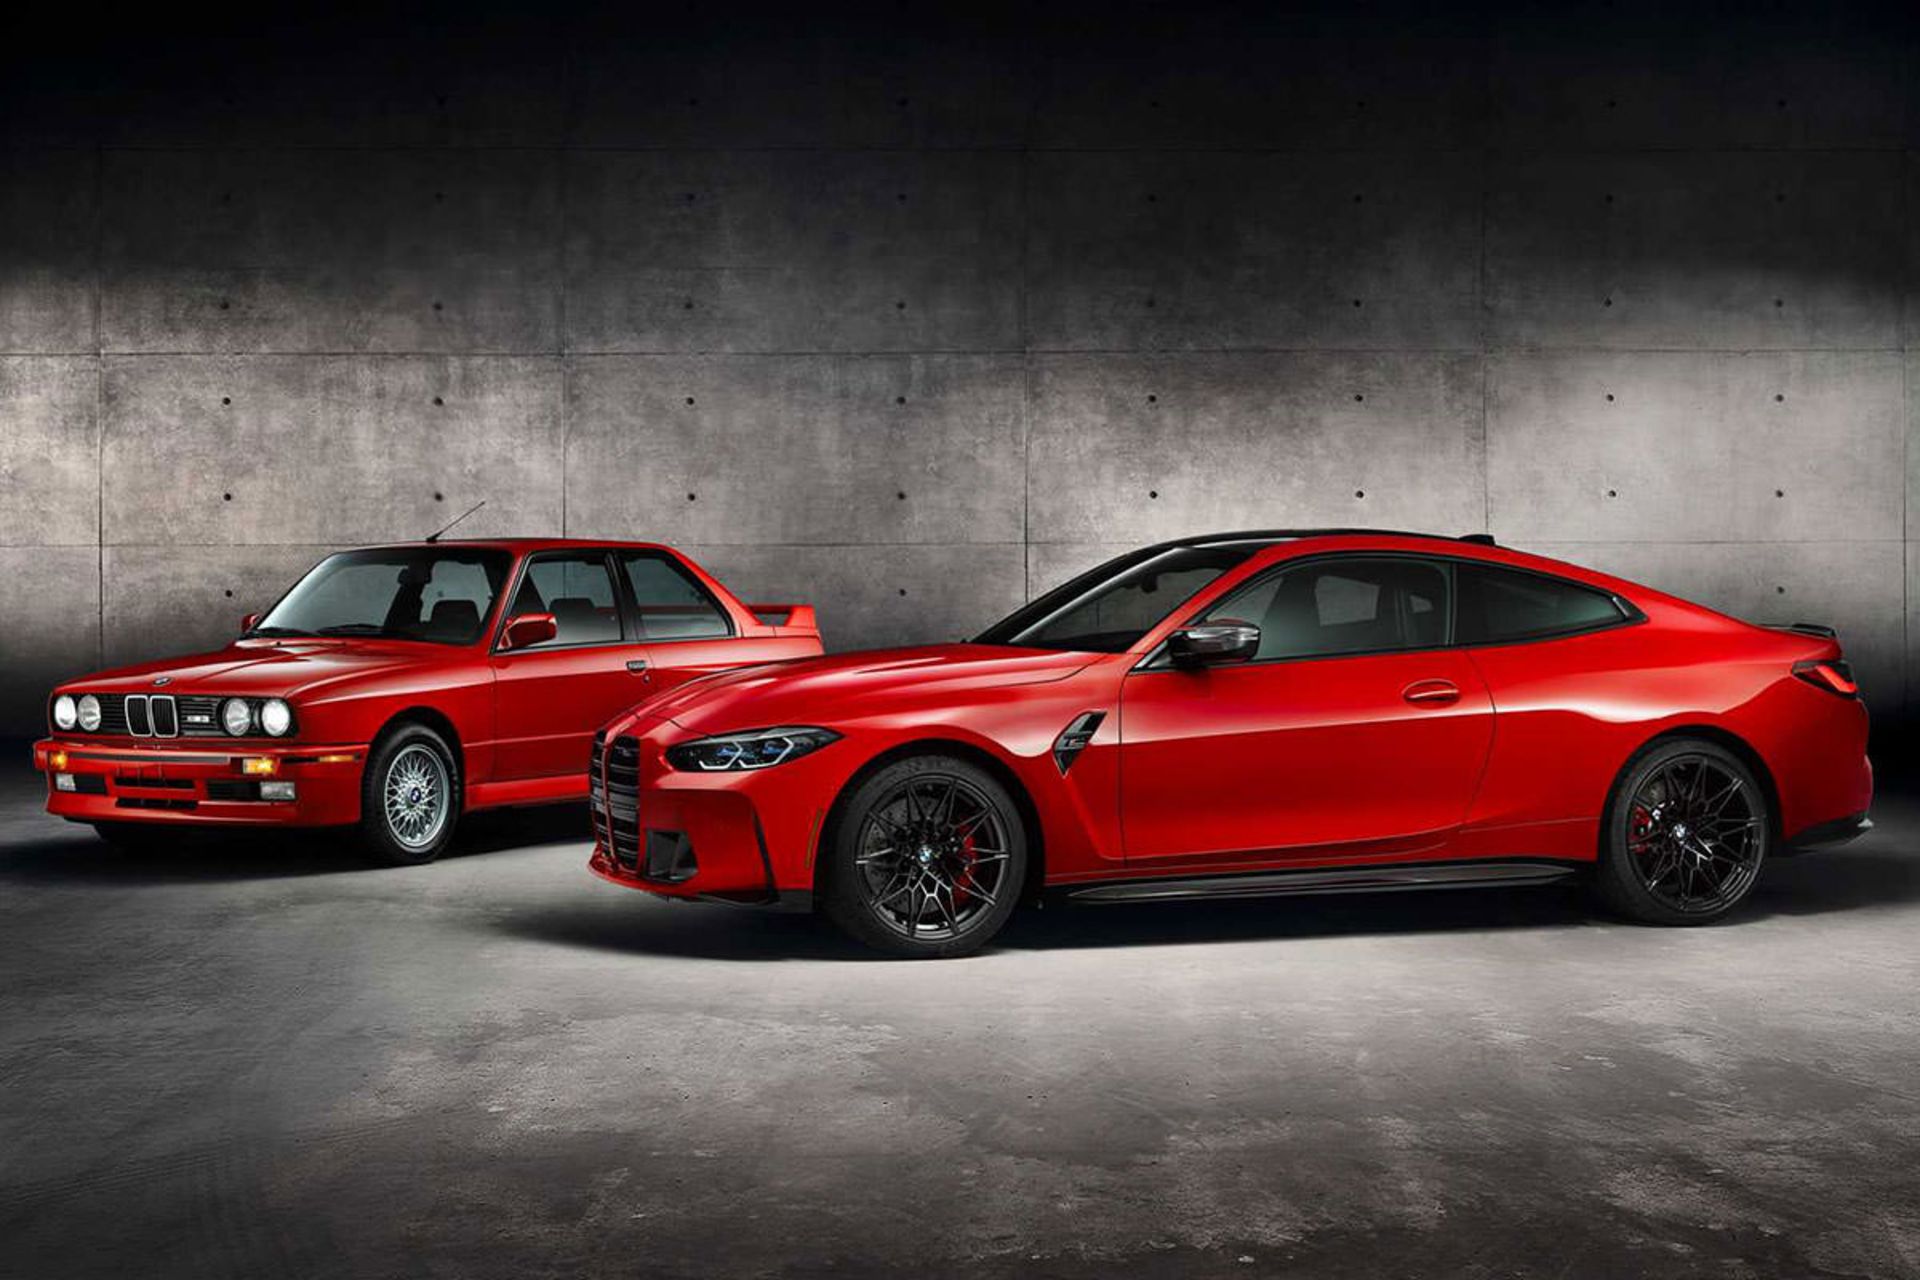 مرجع متخصصين ايران نماي سه چهارم بي ام و ام 4 كامپتيشن / 2021 BMW M4 Competition قرمز رنگ در كنار بي ام و M3